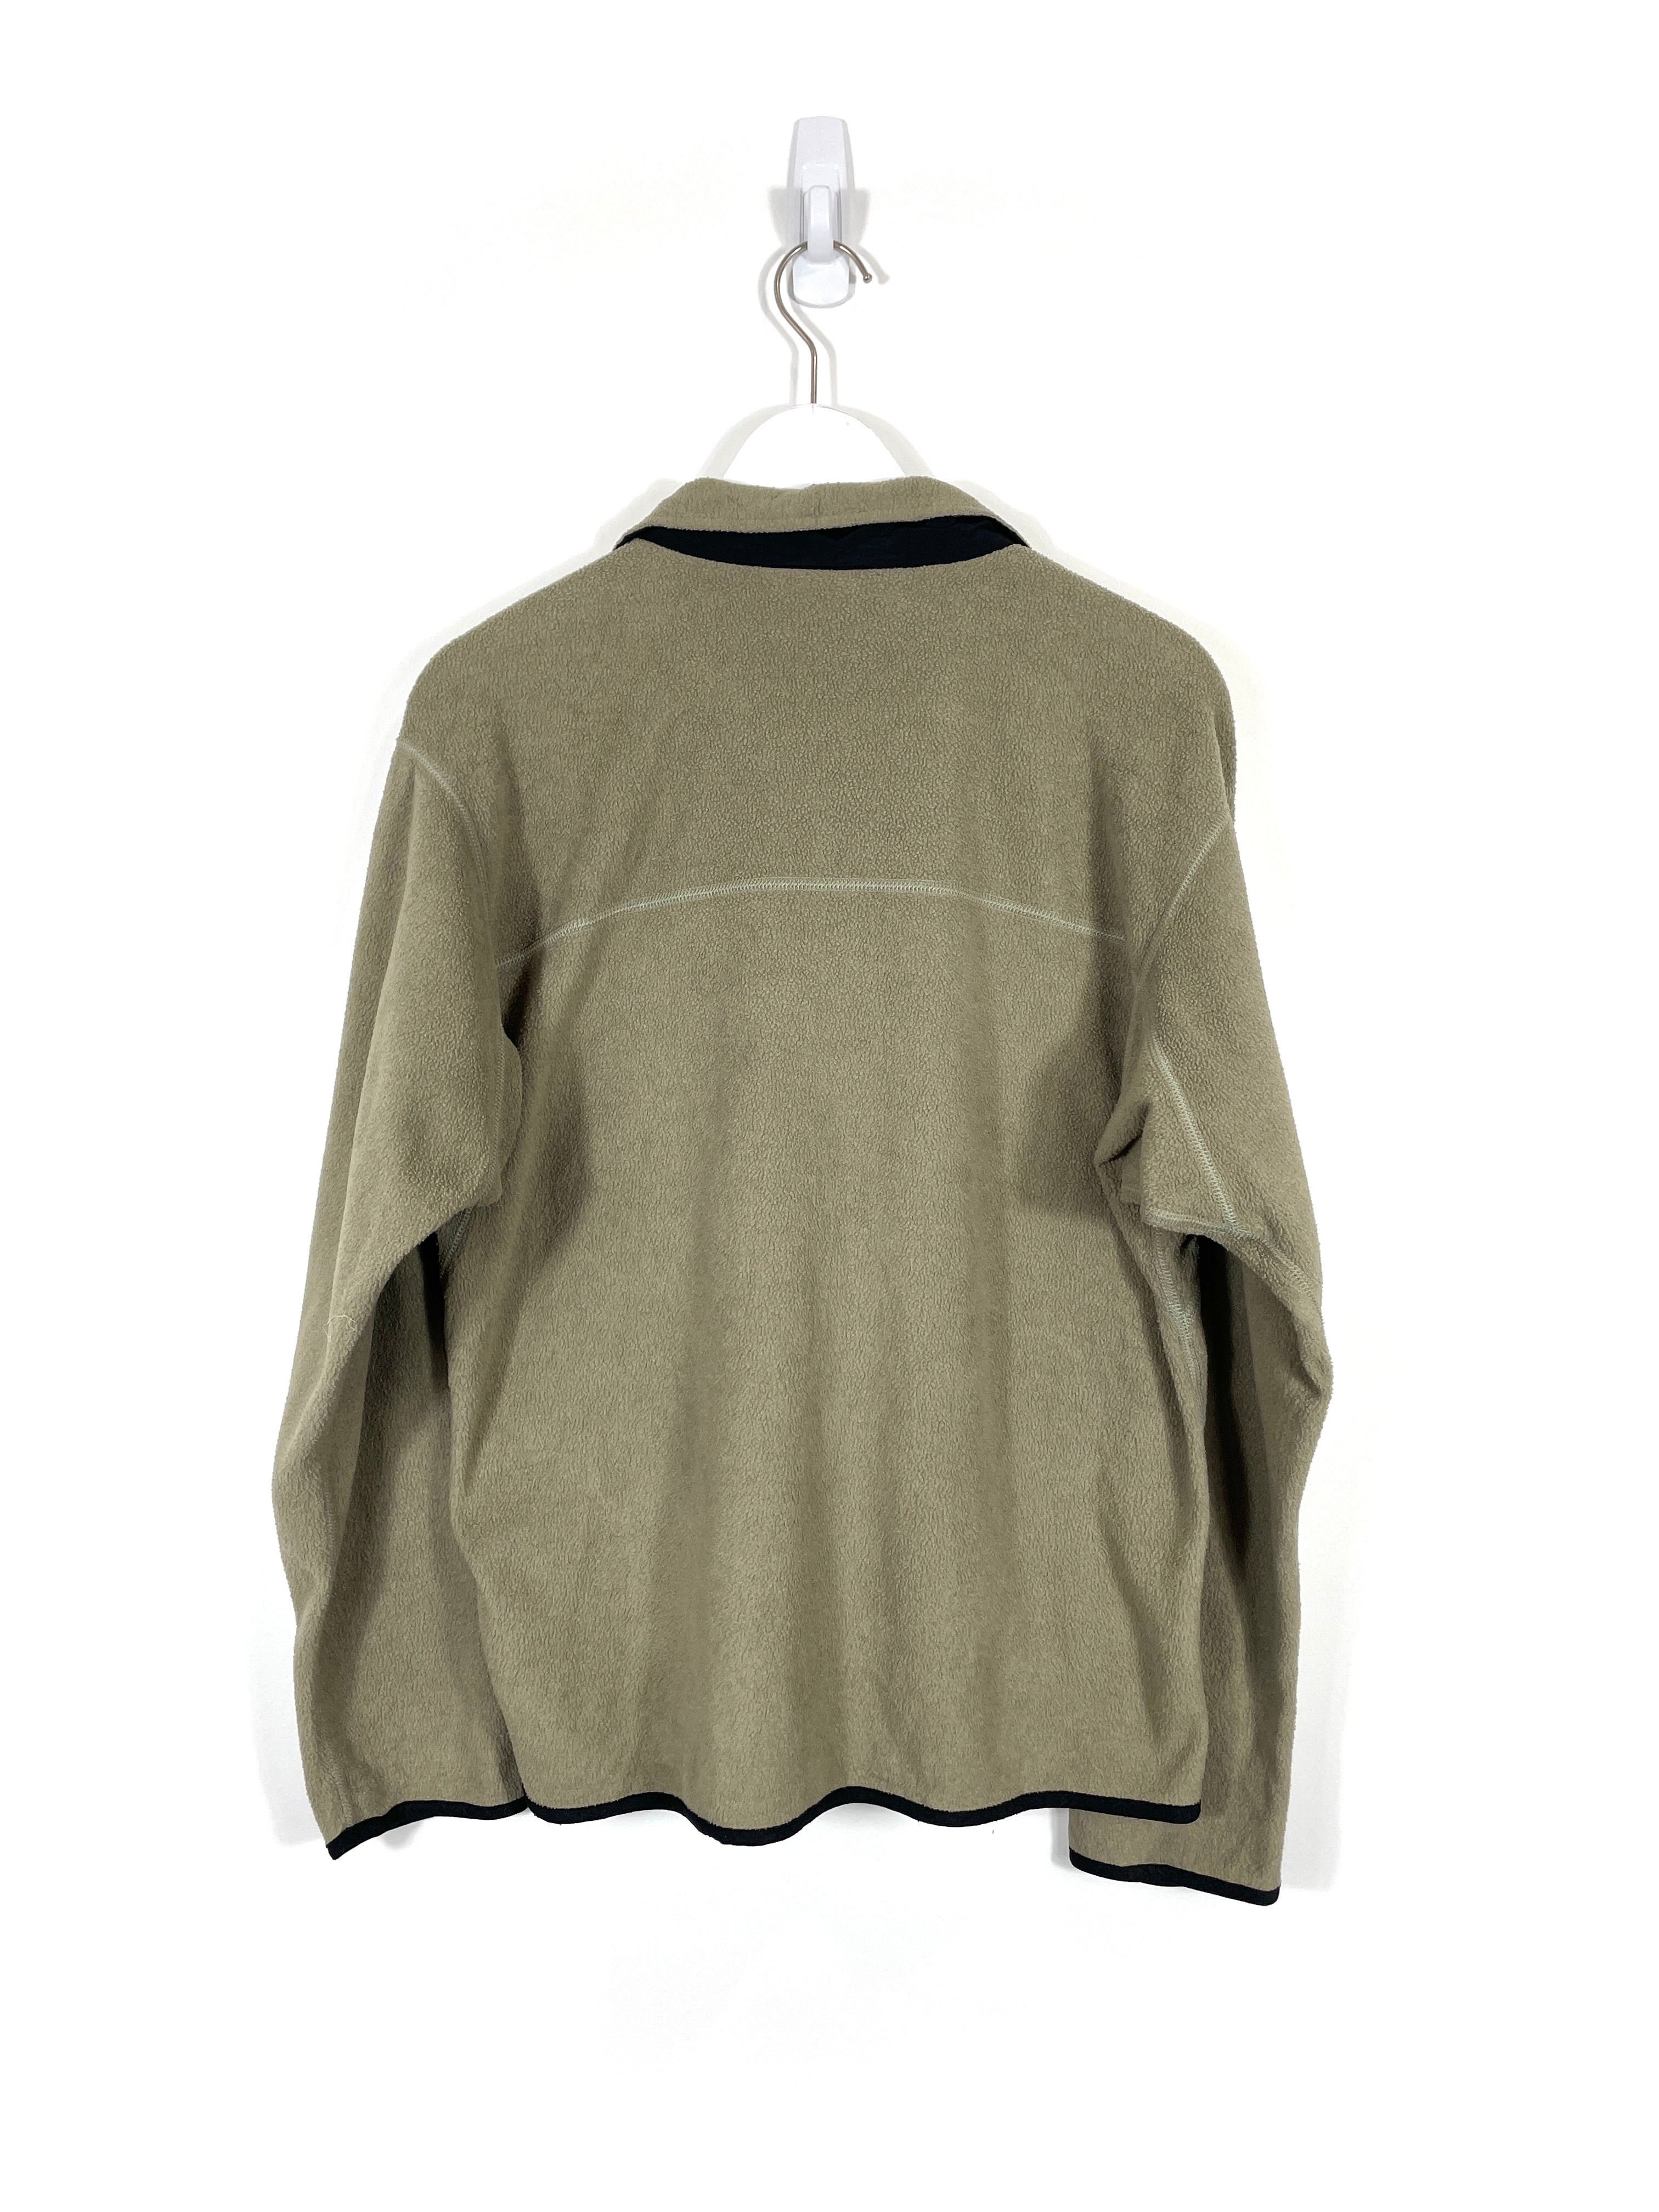 Vintage The North Face Zip-Up Fleece Sweatshirt - Women's Large